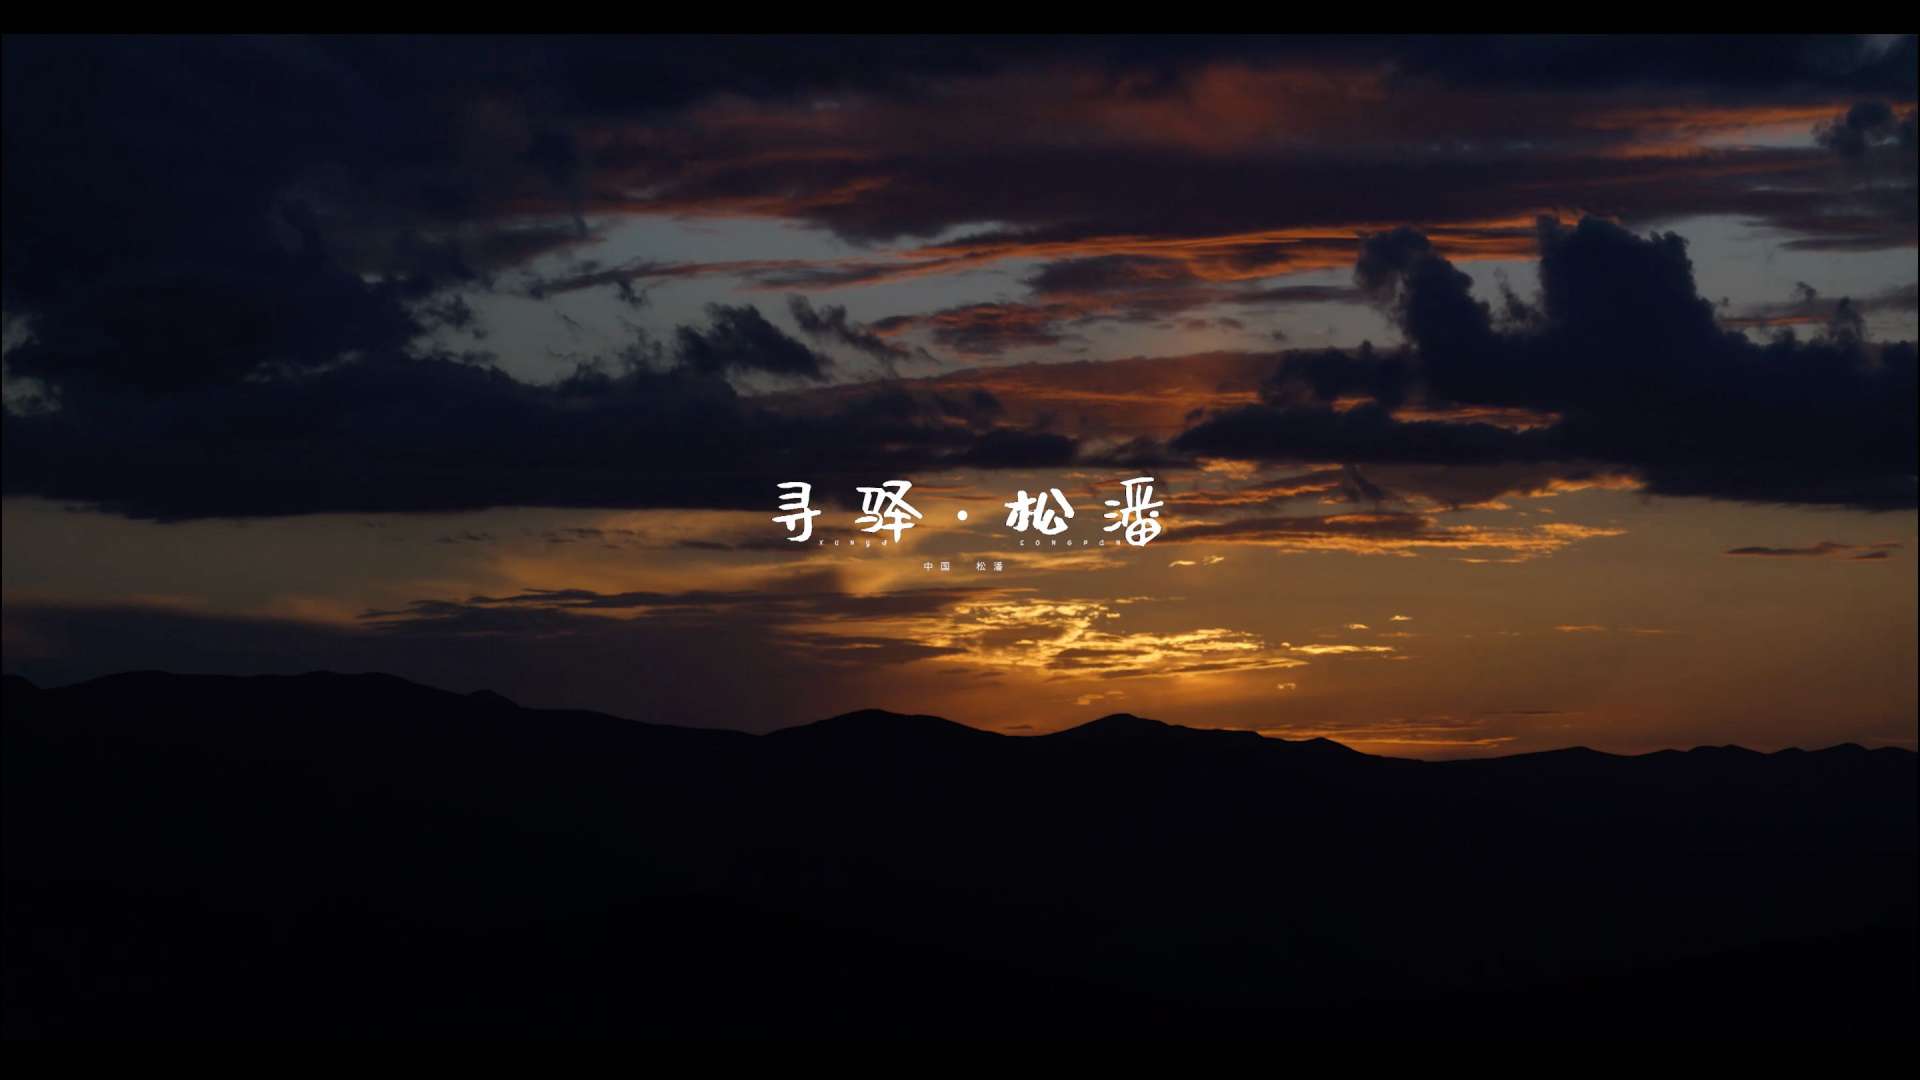 松潘城市形象宣传片《寻驿·松潘》4K6分钟版